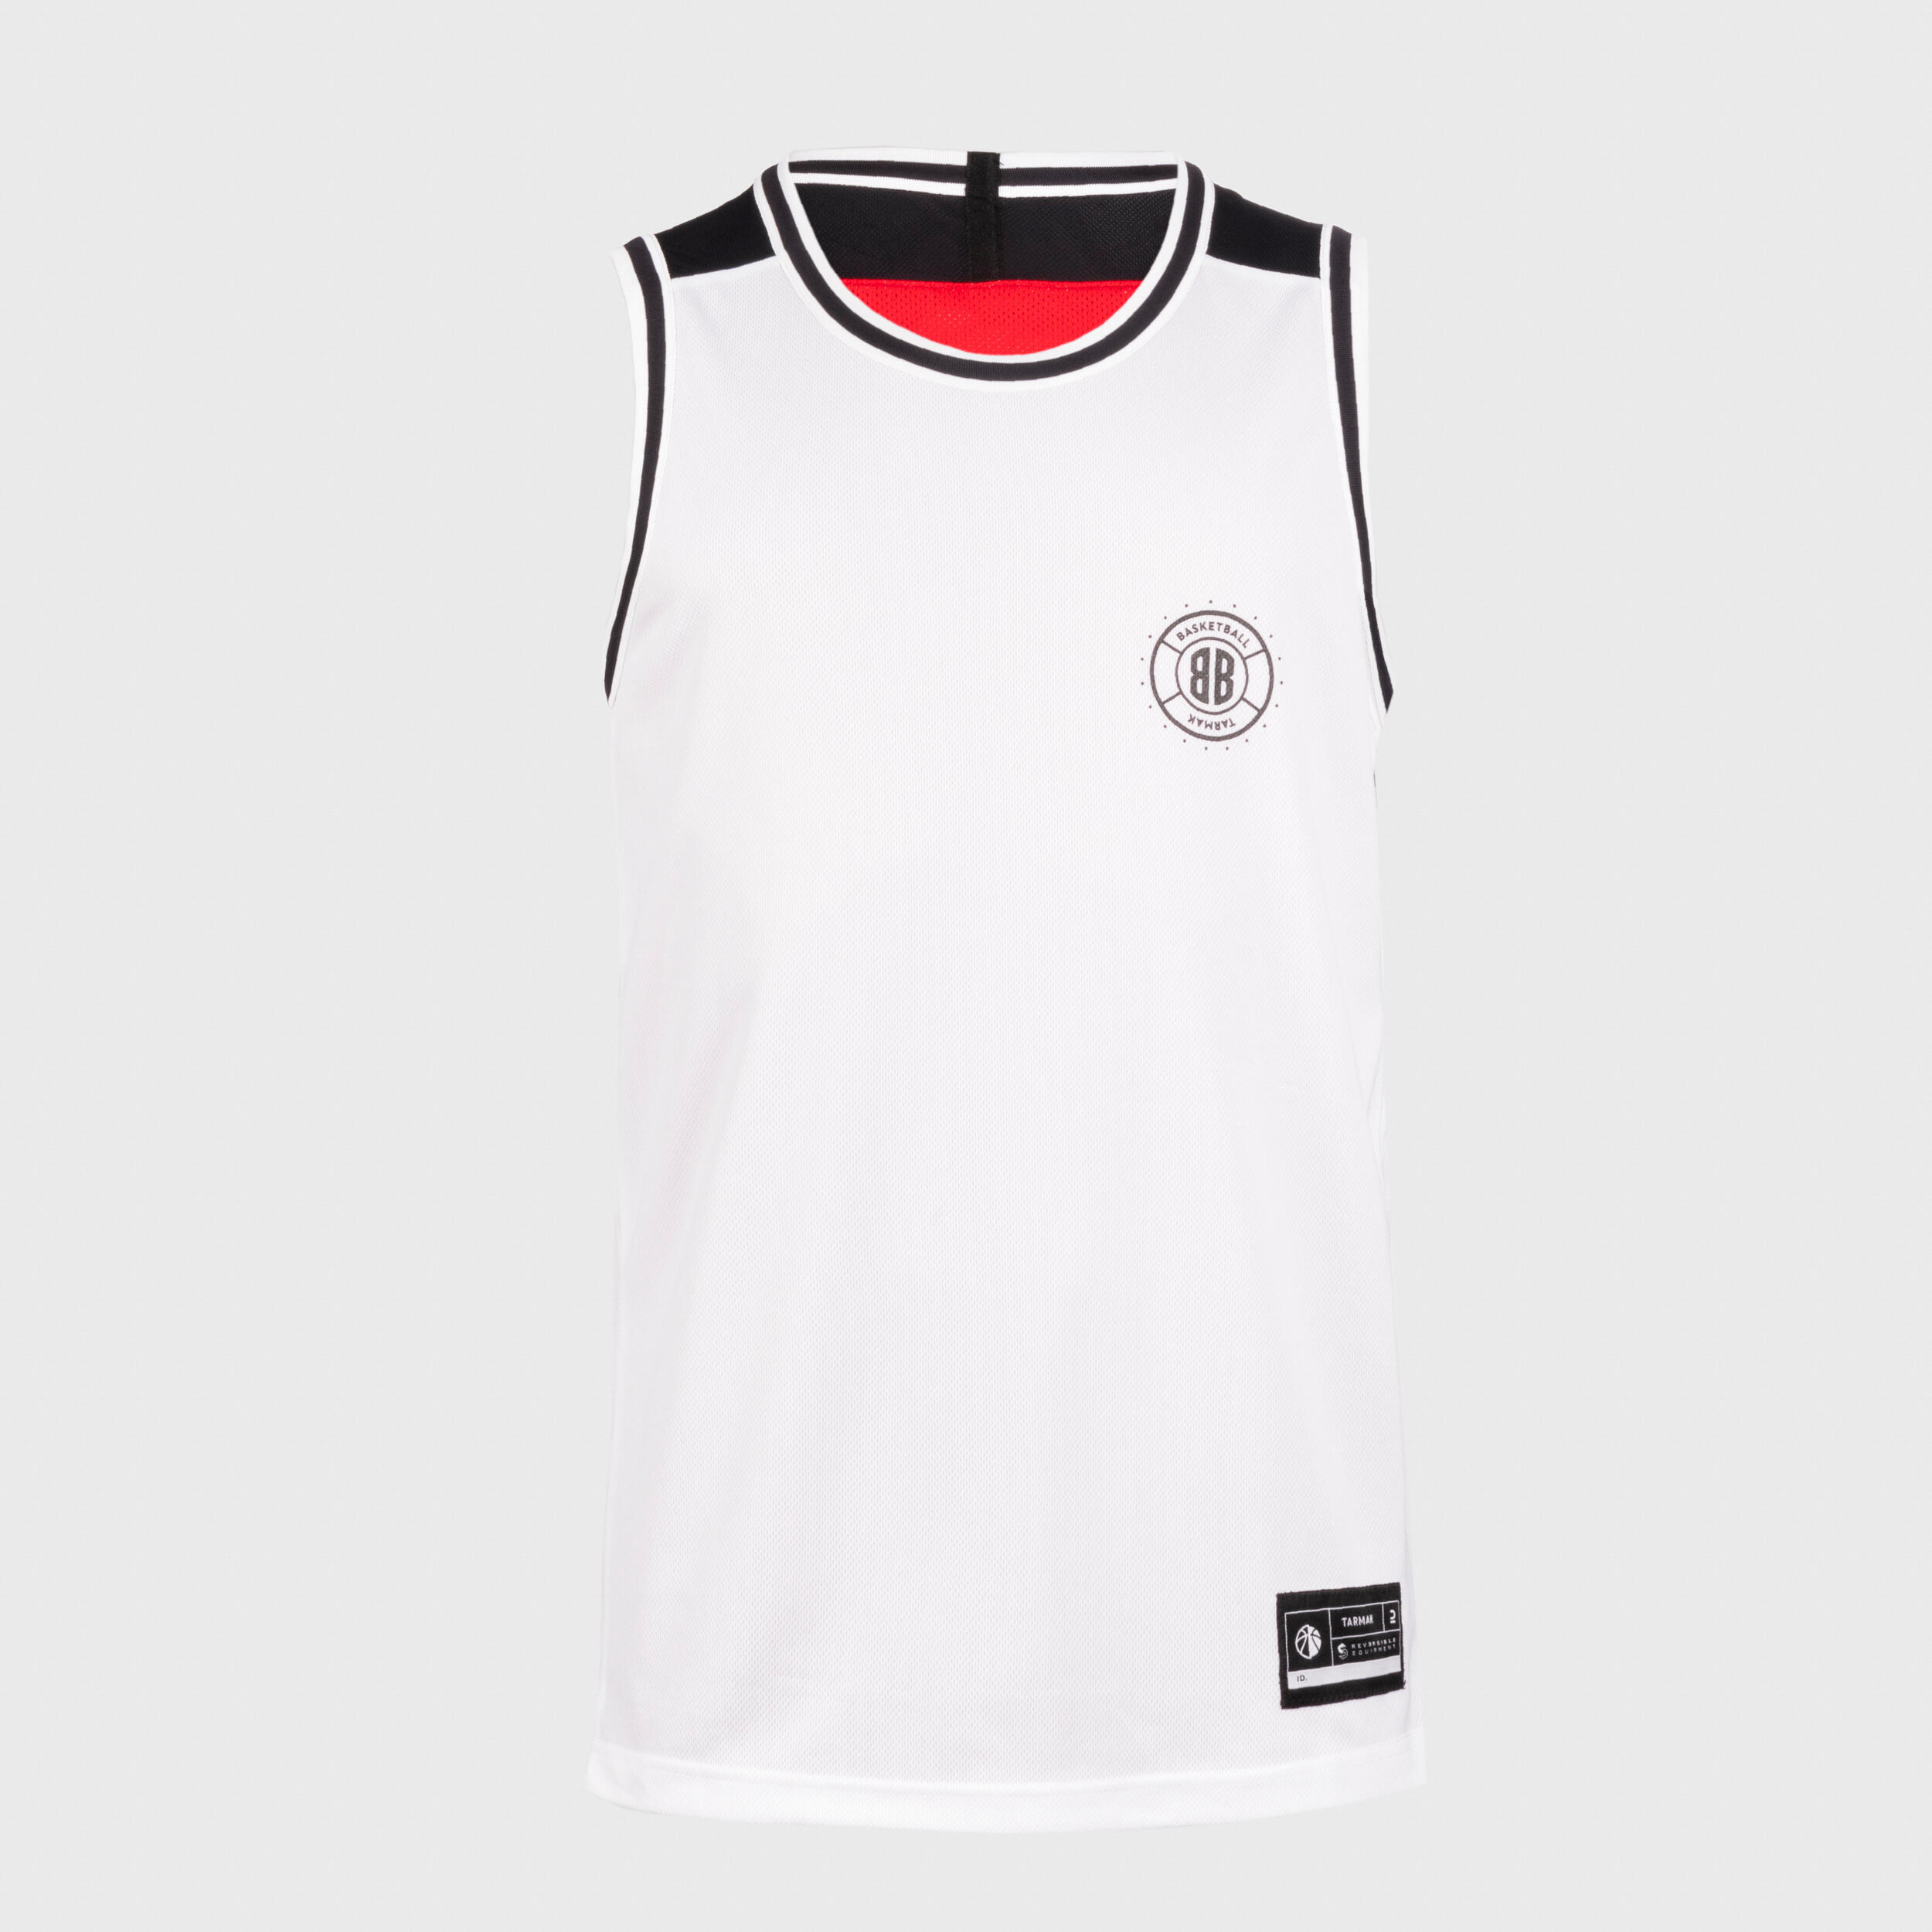 Men's/Women's Reversible Sleeveless Basketball Jersey T500 - White/Red 5/13